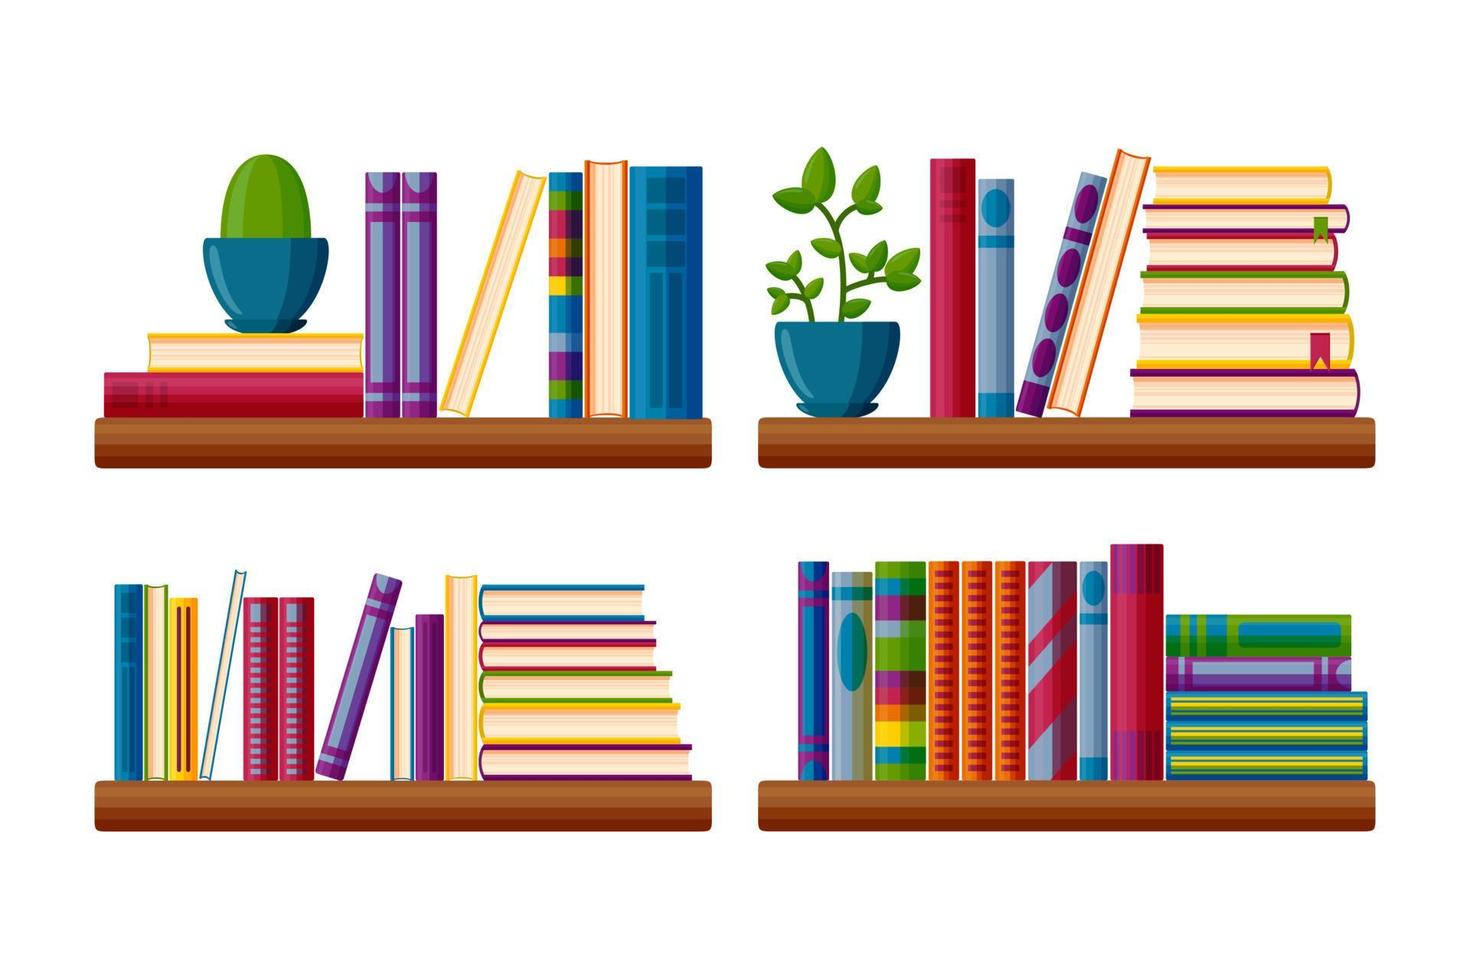 estantes de librería con plantas en macetas. los libros más vendidos se apilan al estilo de las caricaturas. ilustración vectorial vector